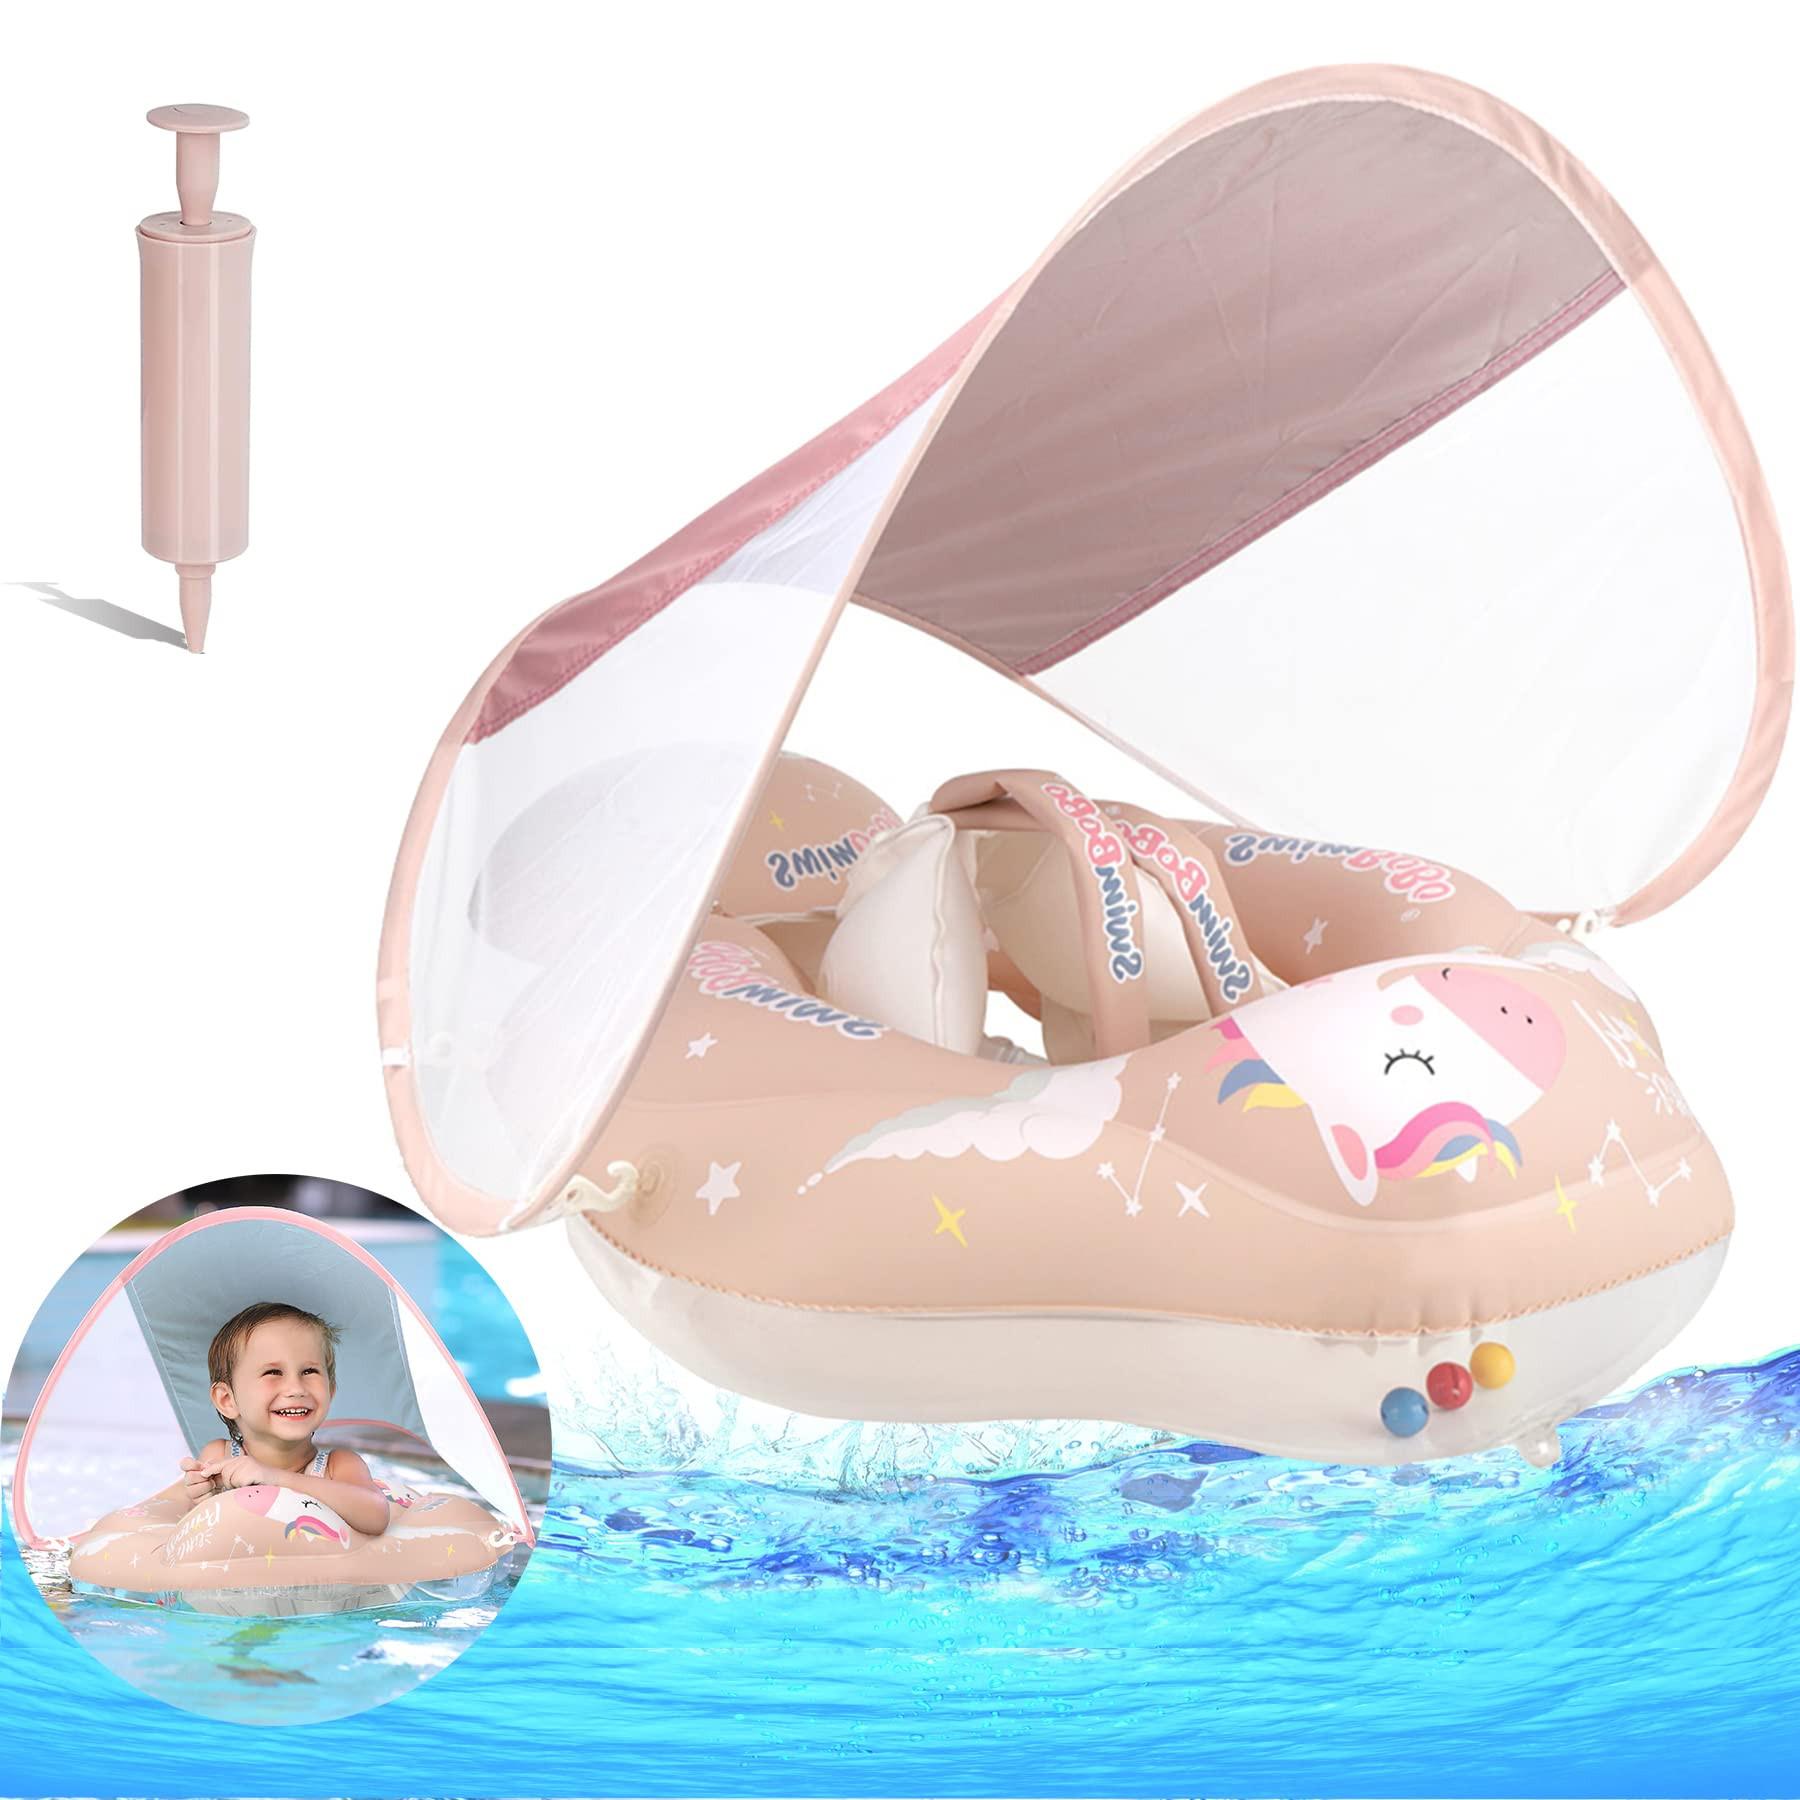 Activity-board Anneau flottant pour bébé avec toit solaire amovible, aide à la flottaison pour bébé avec siège flottant, entraîneur de natation gonflable avec flotteur anti-basculement Pink